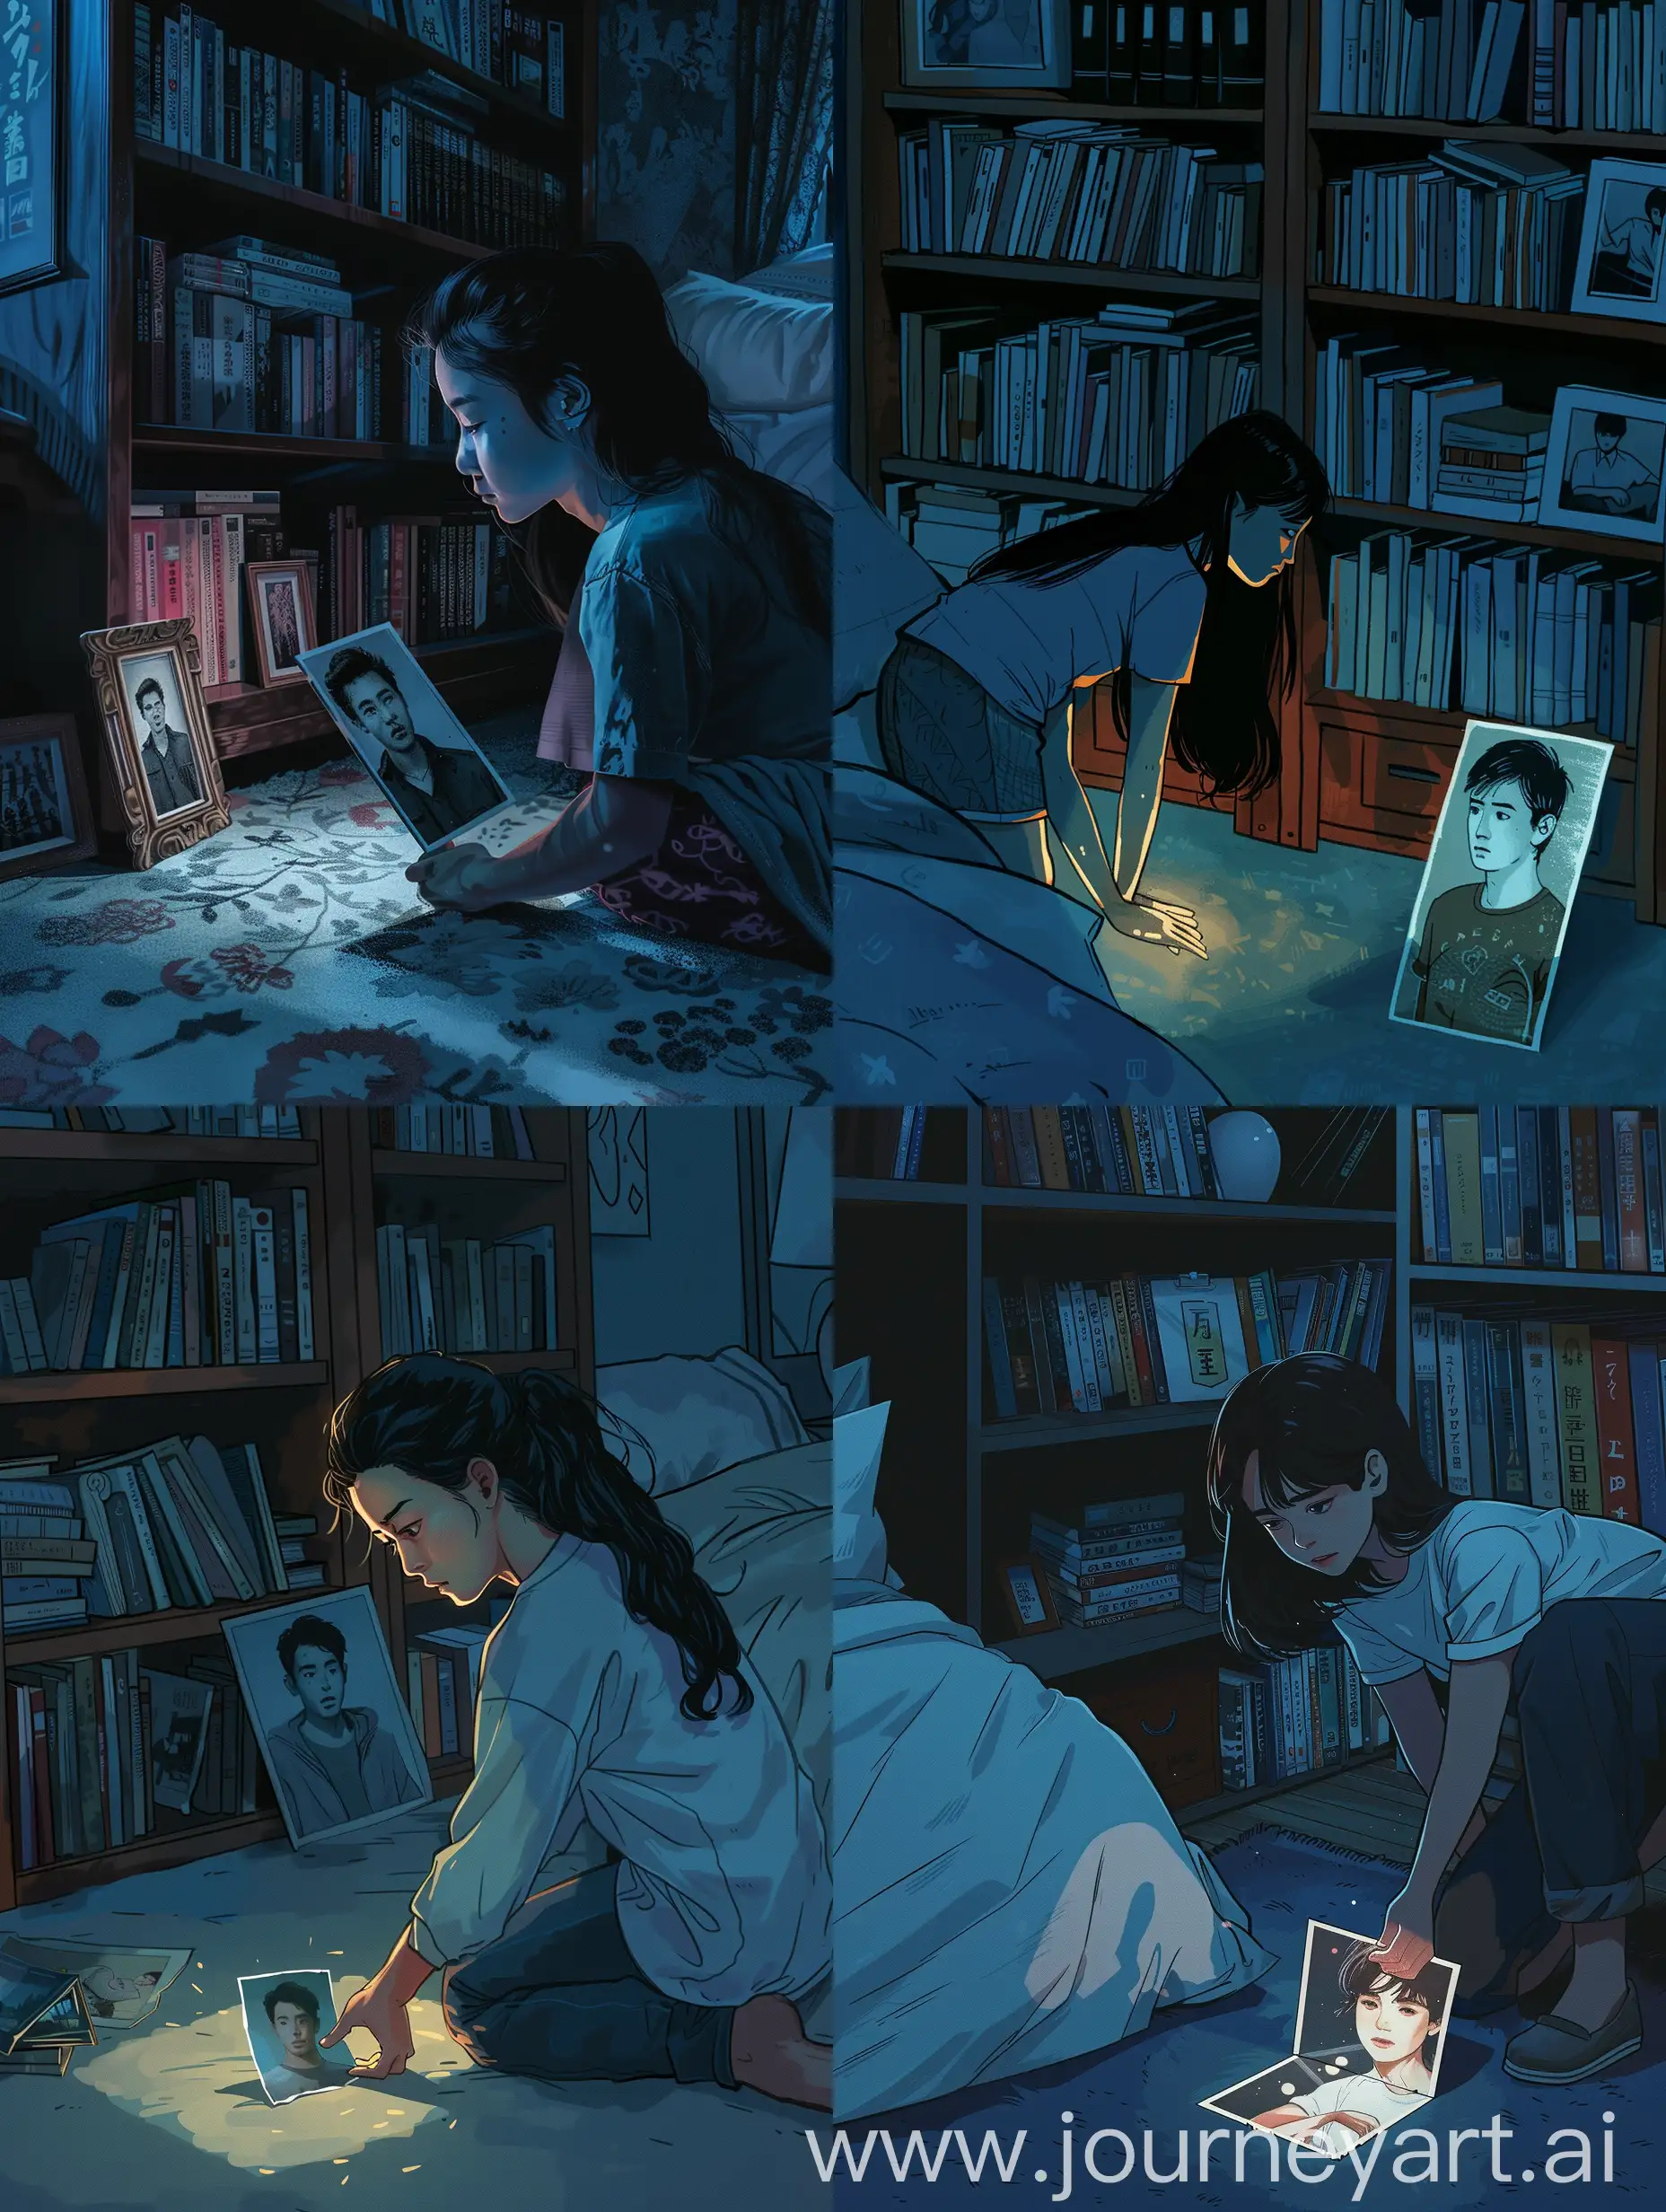 夜晚，卧室地上的半张照片，亚洲面孔的少女从书架旁捡起只有一半的照片，照片的画面是有一位少年